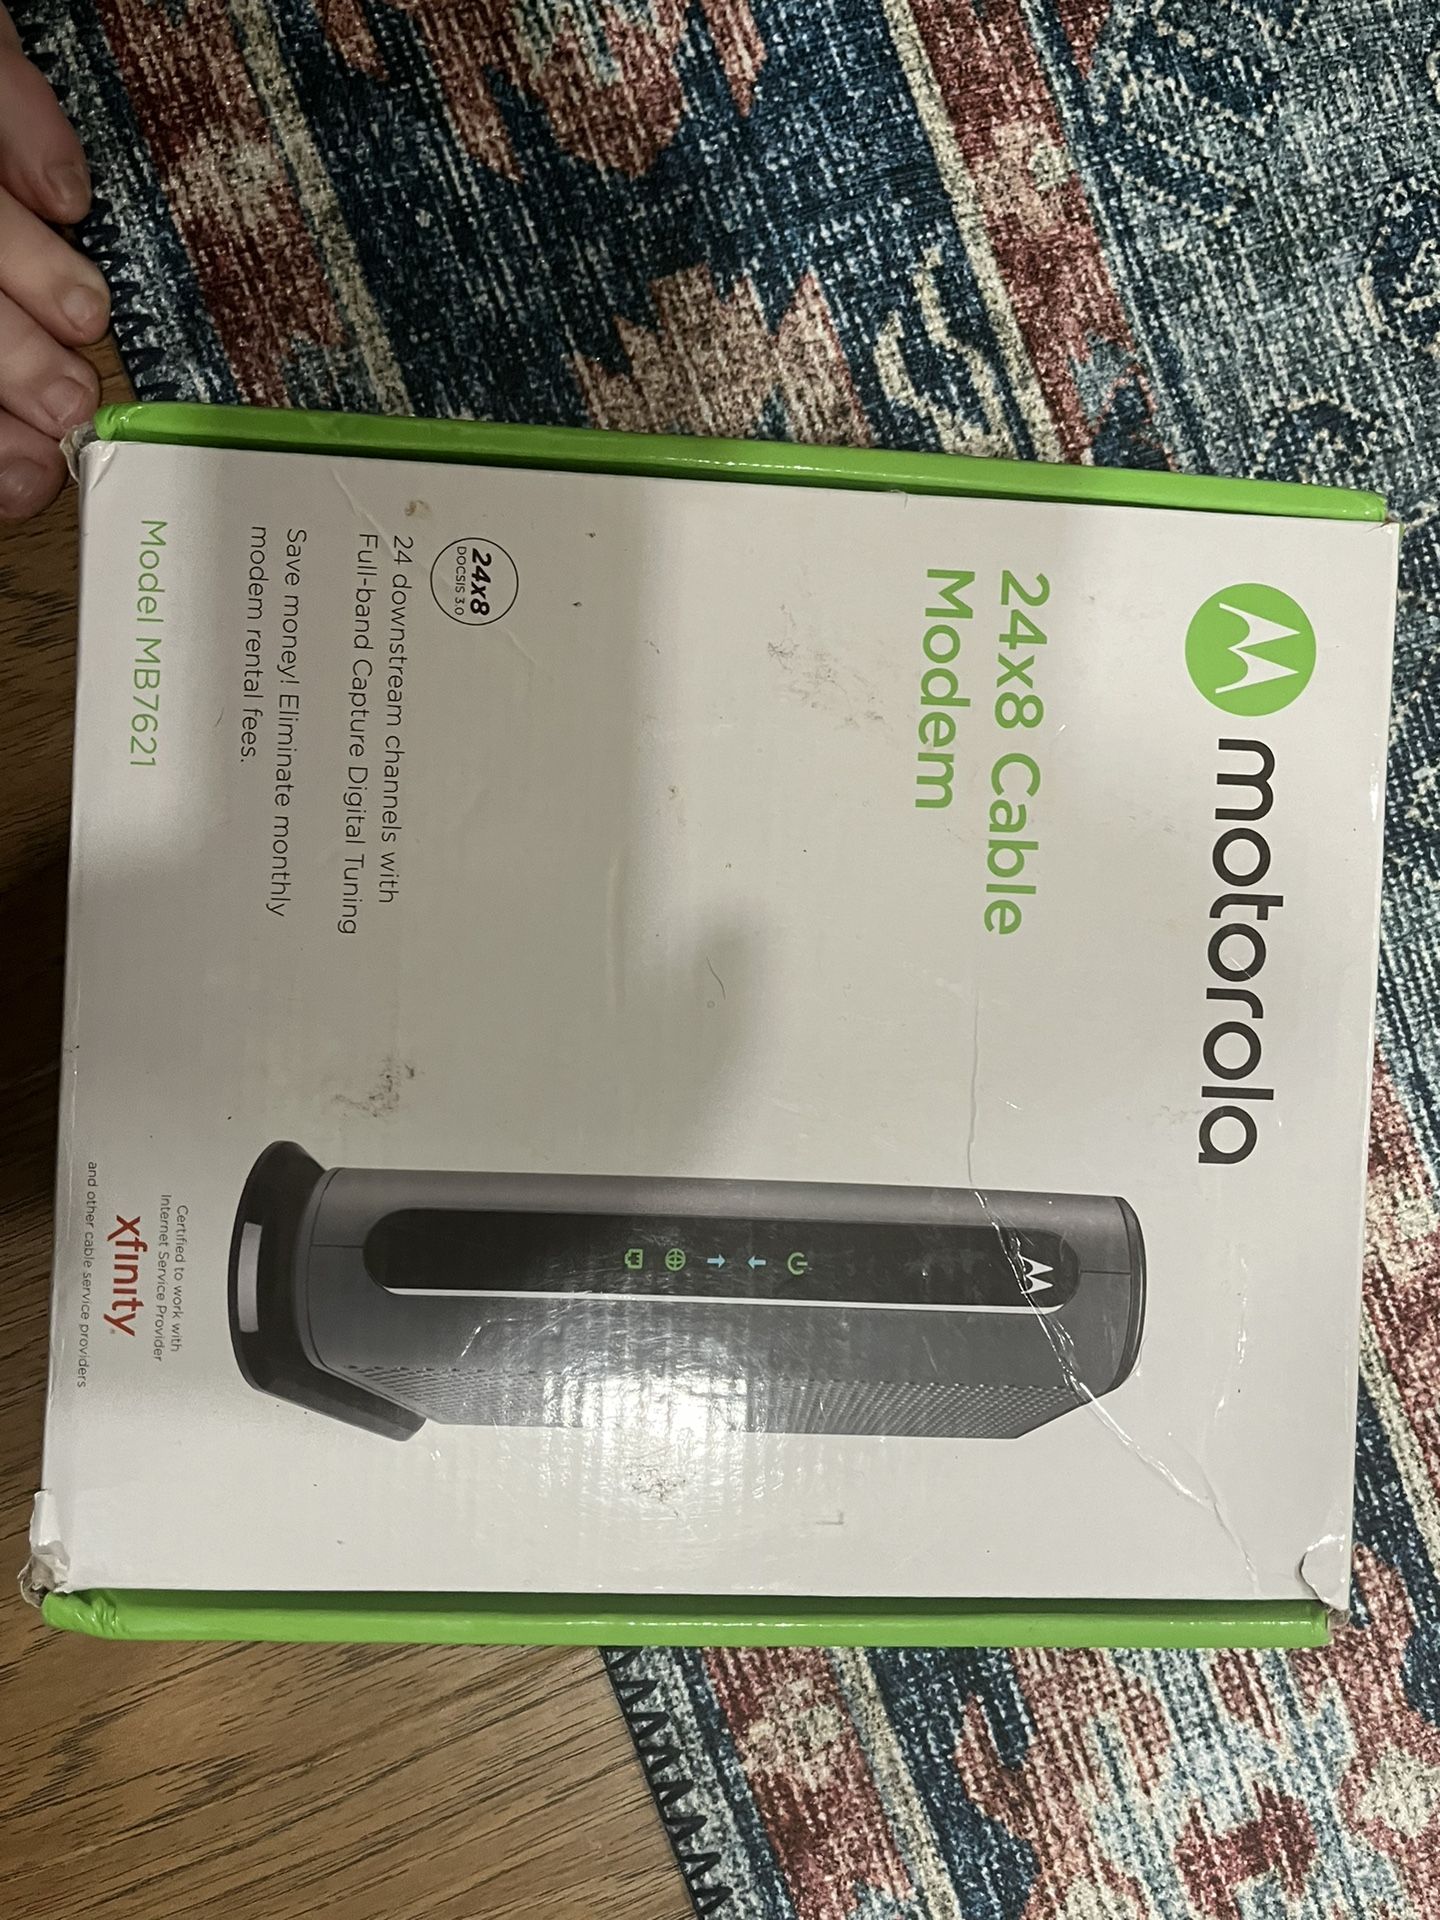 Motorola Modem Open Box